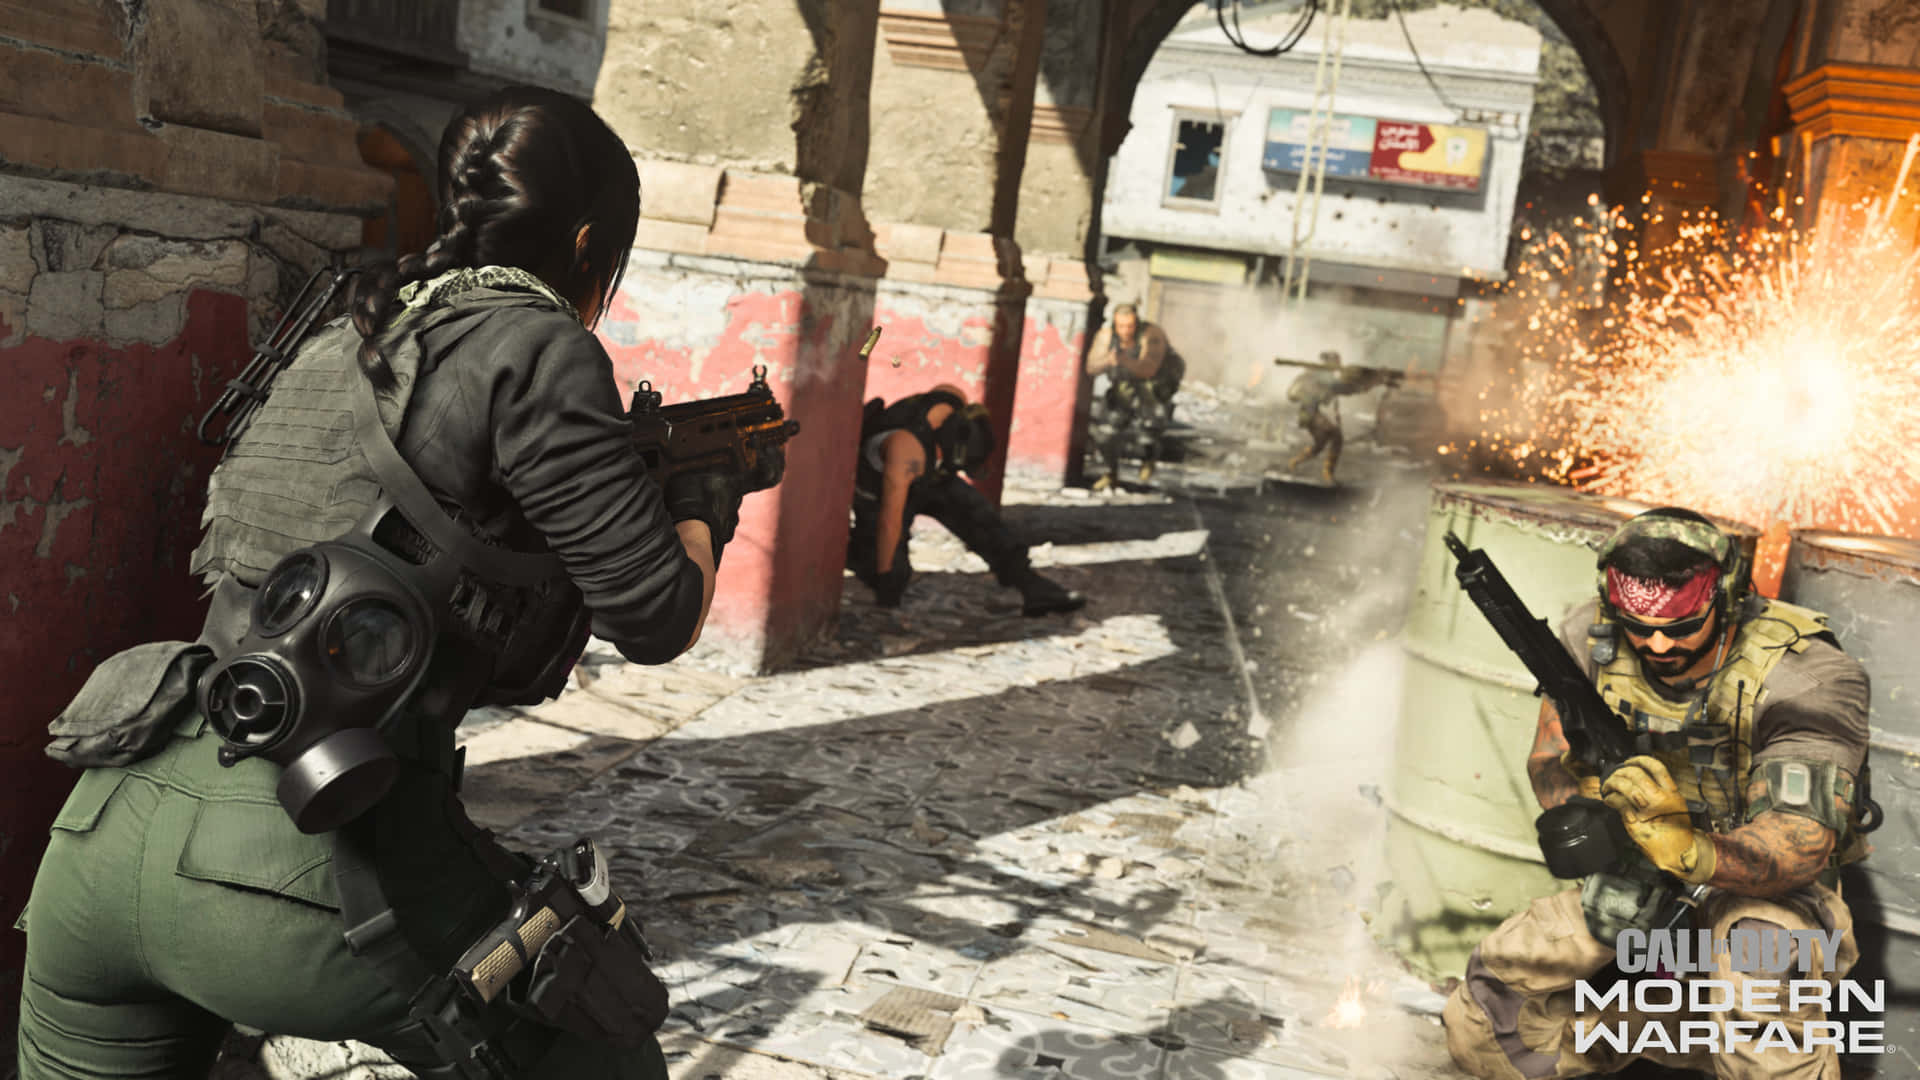 4k Call Of Duty Modern Warfare Background Soldiers In Urban Battlefield